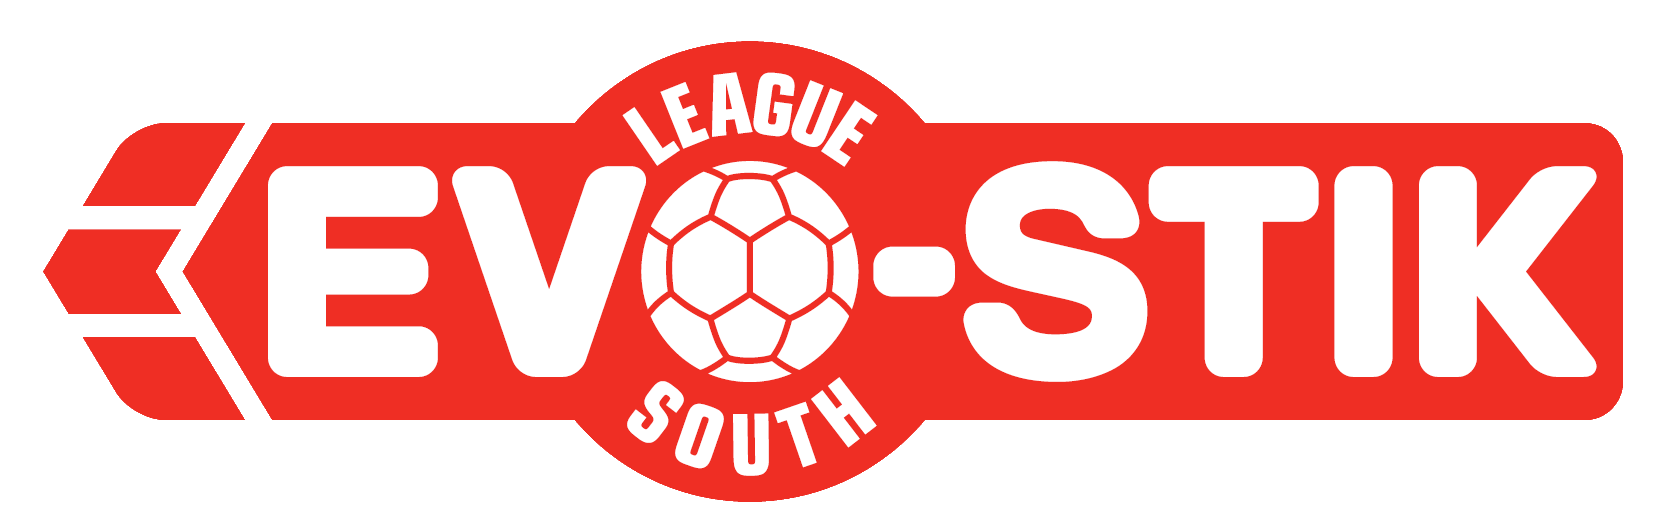 EVO-STIK League South